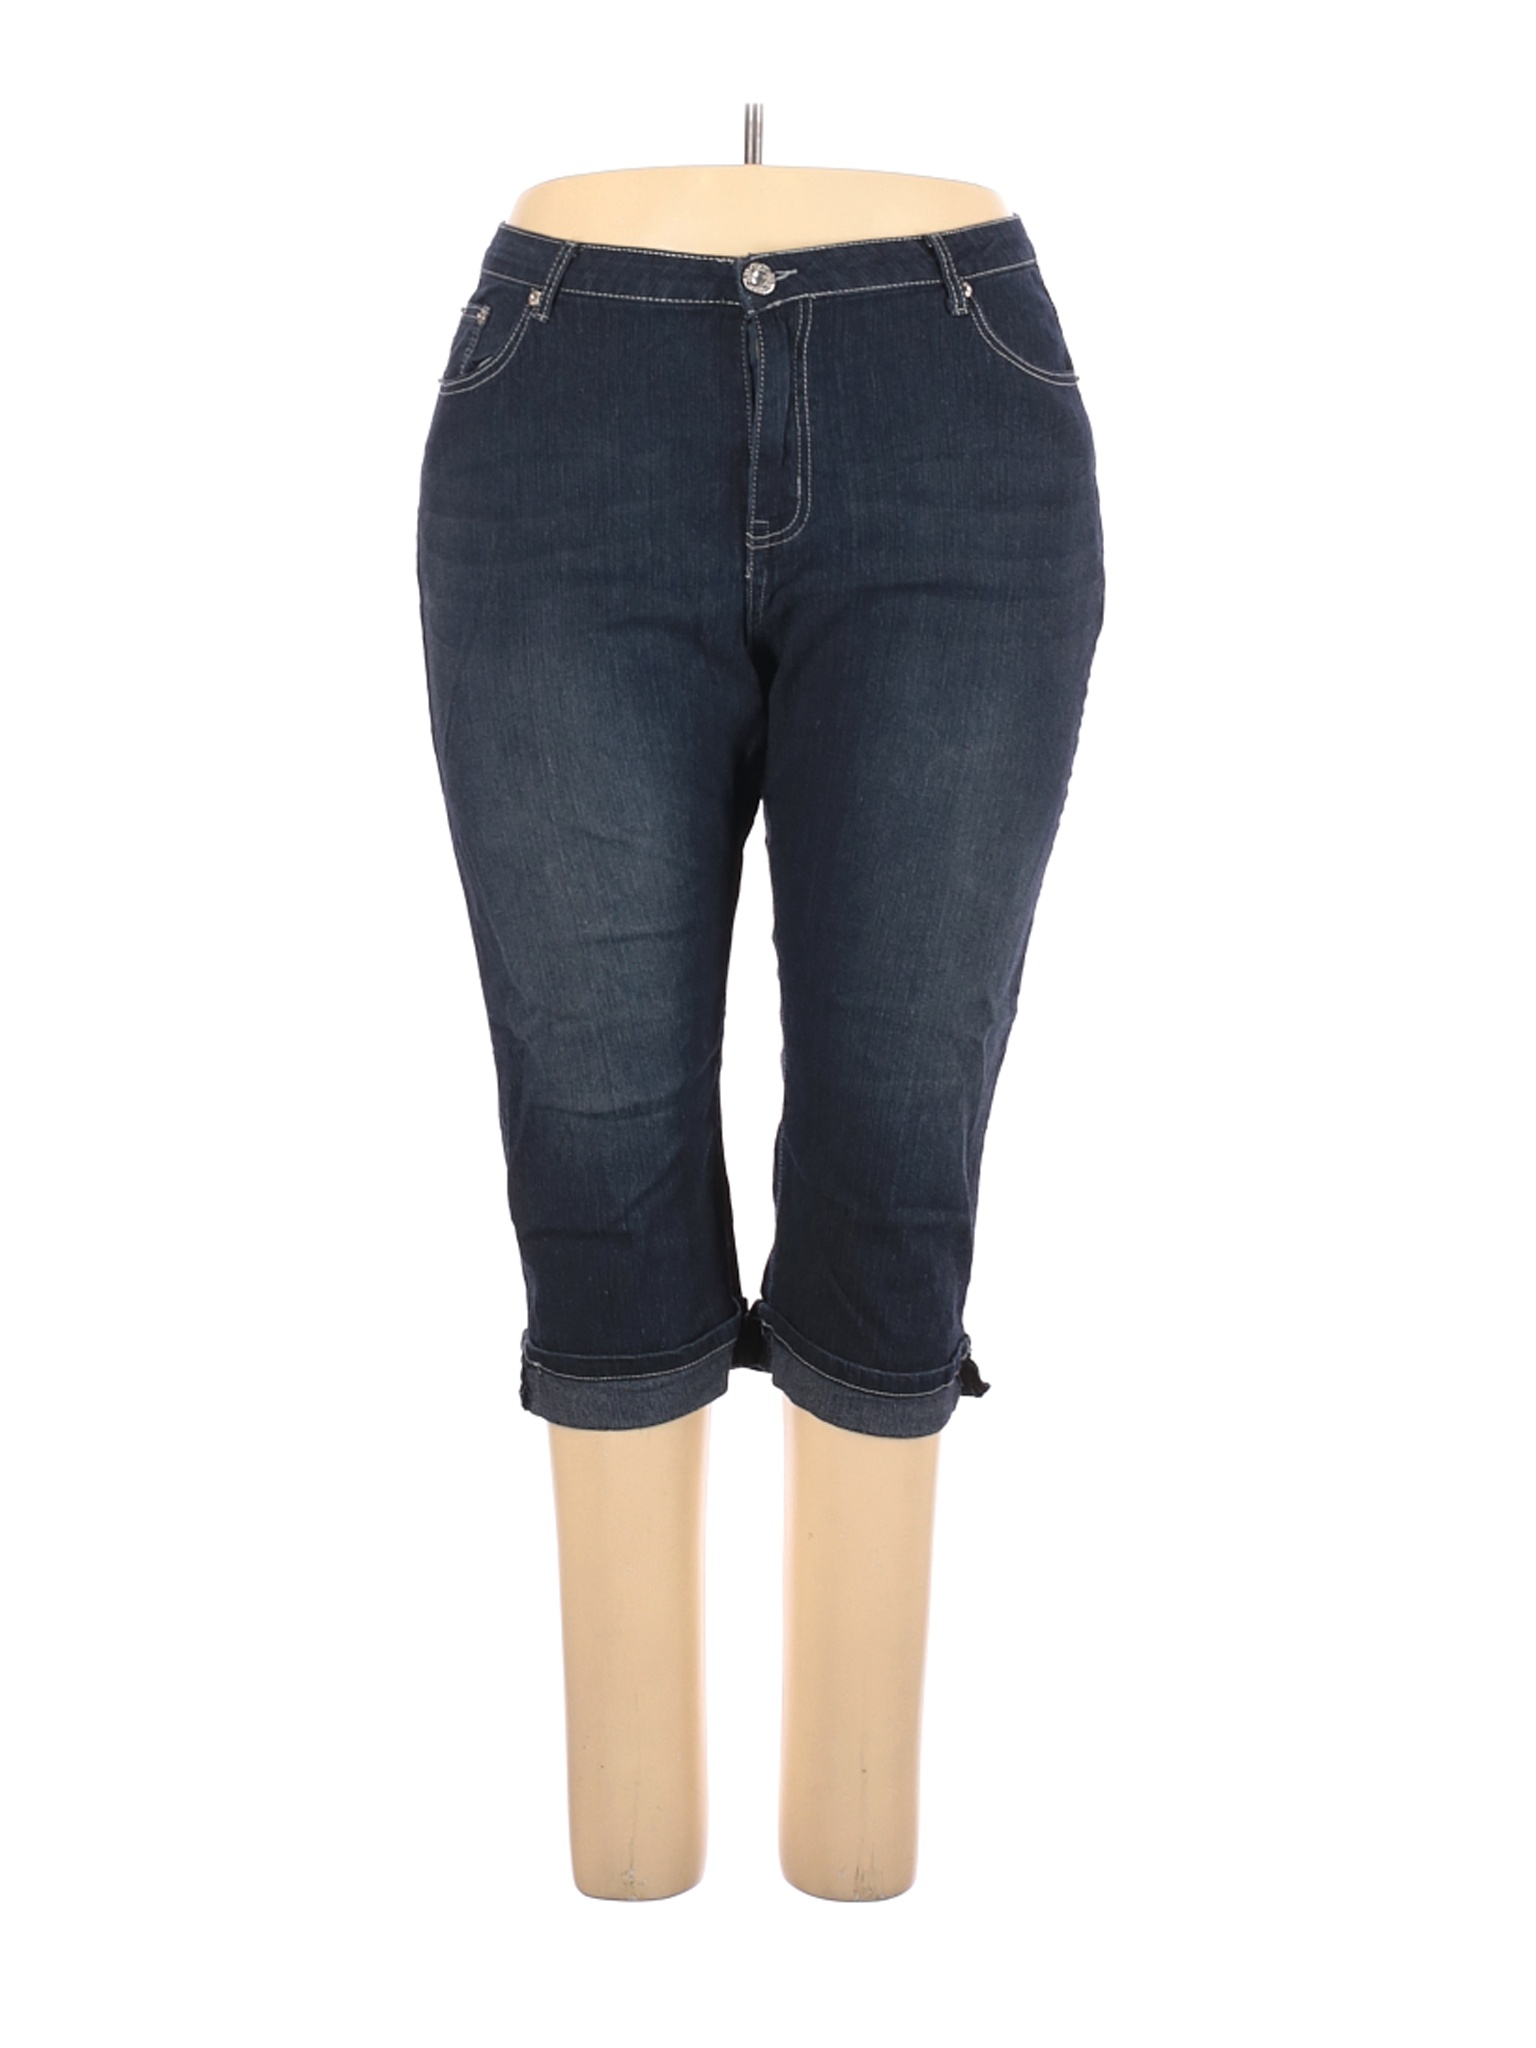 DKIN Women Blue Jeans 20 Plus | eBay